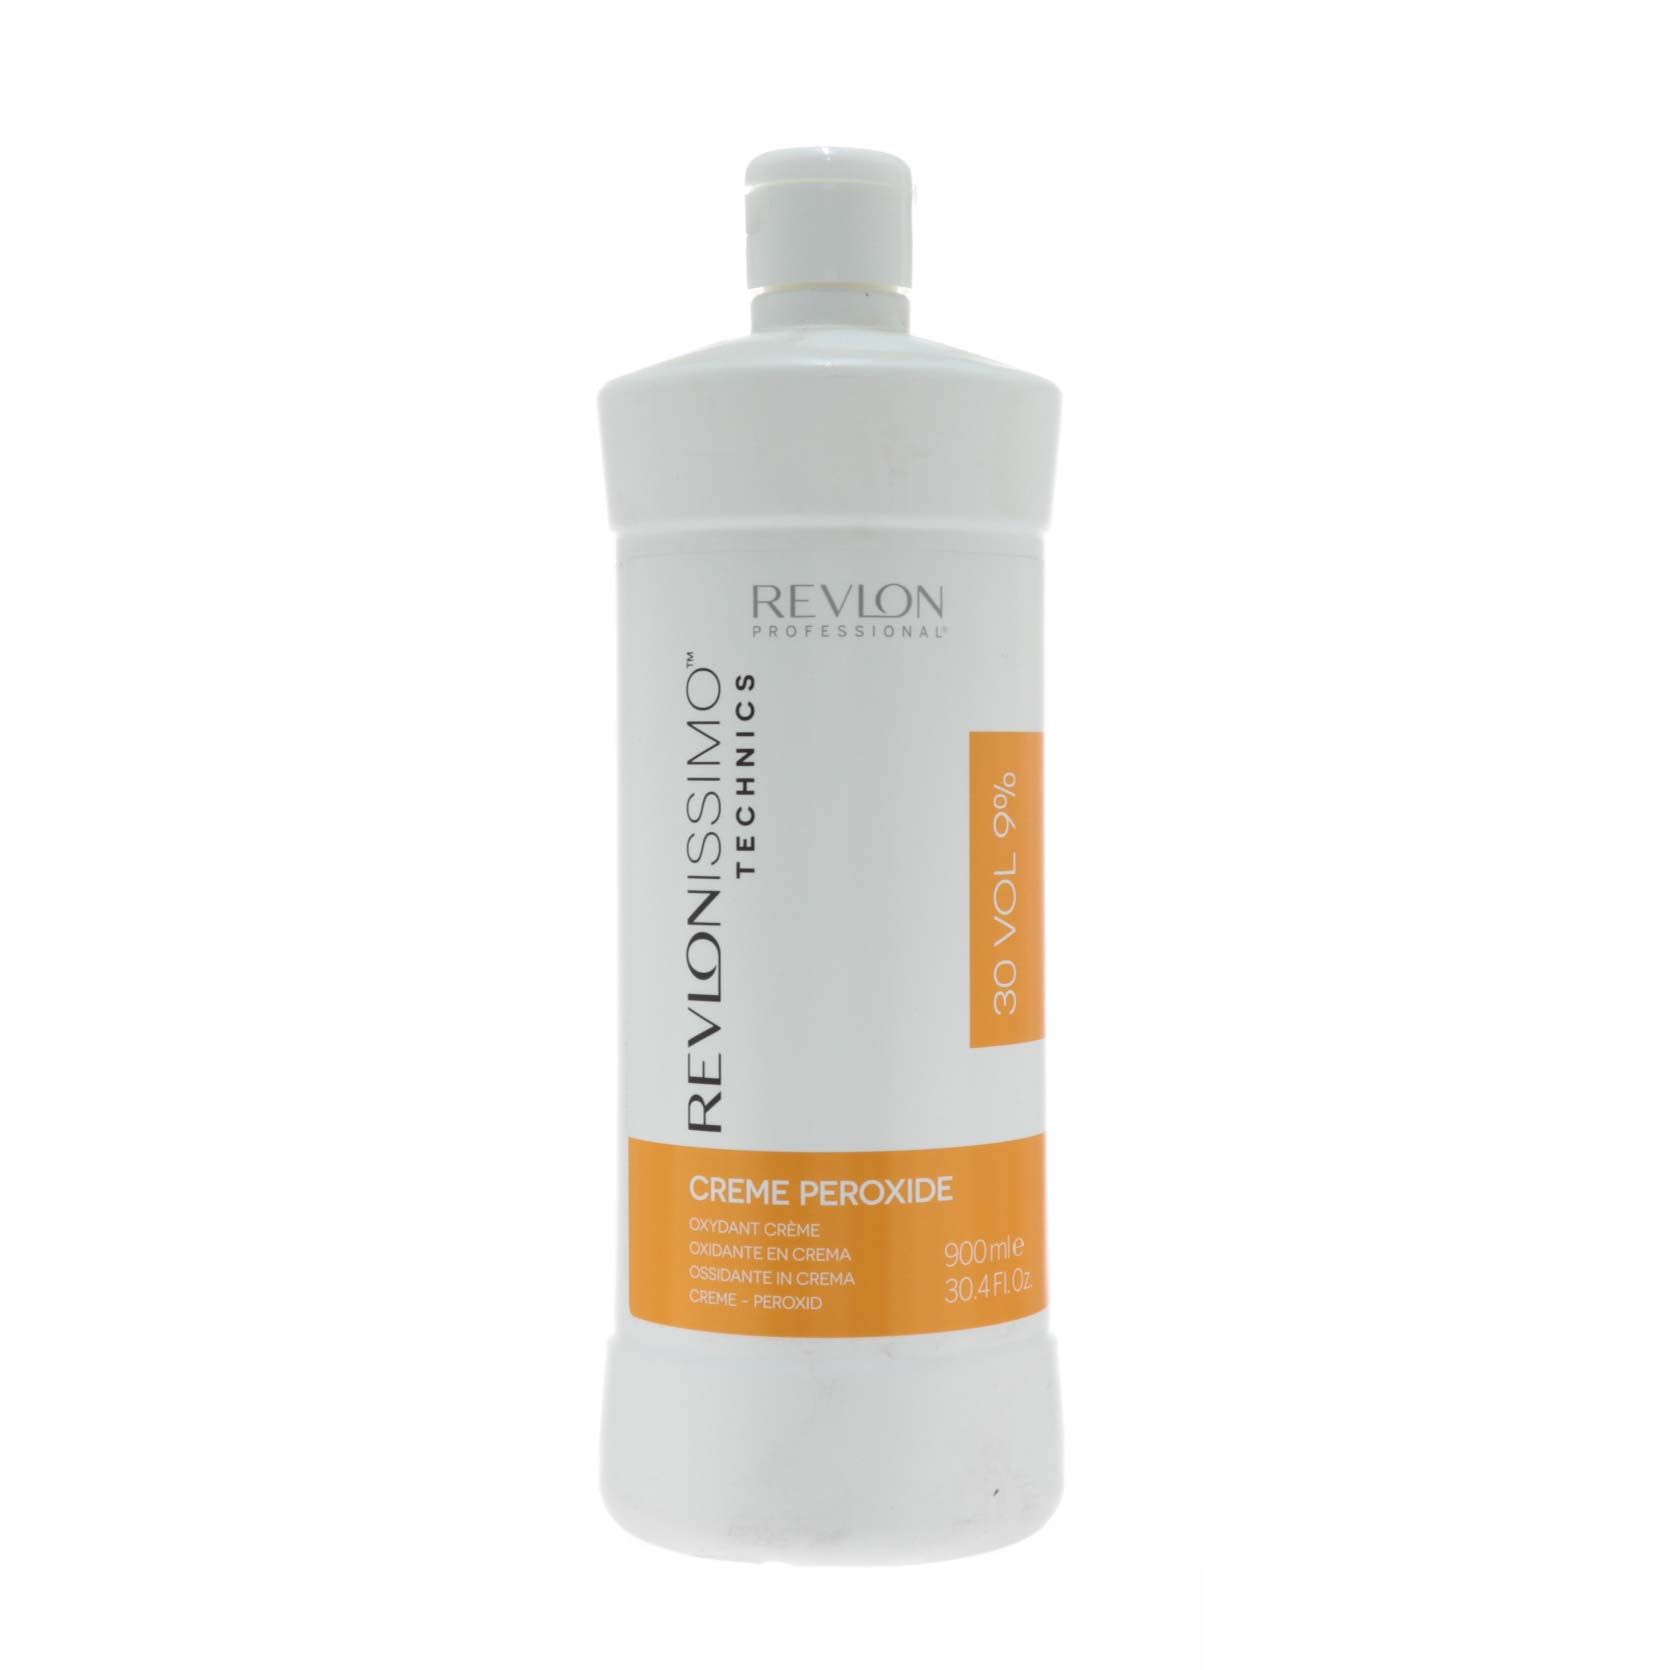 Проявитель Revlon Professional Creme Peroxide 9% 900 мл проявитель indola professional cream developer 30 vol 9% 1000 мл